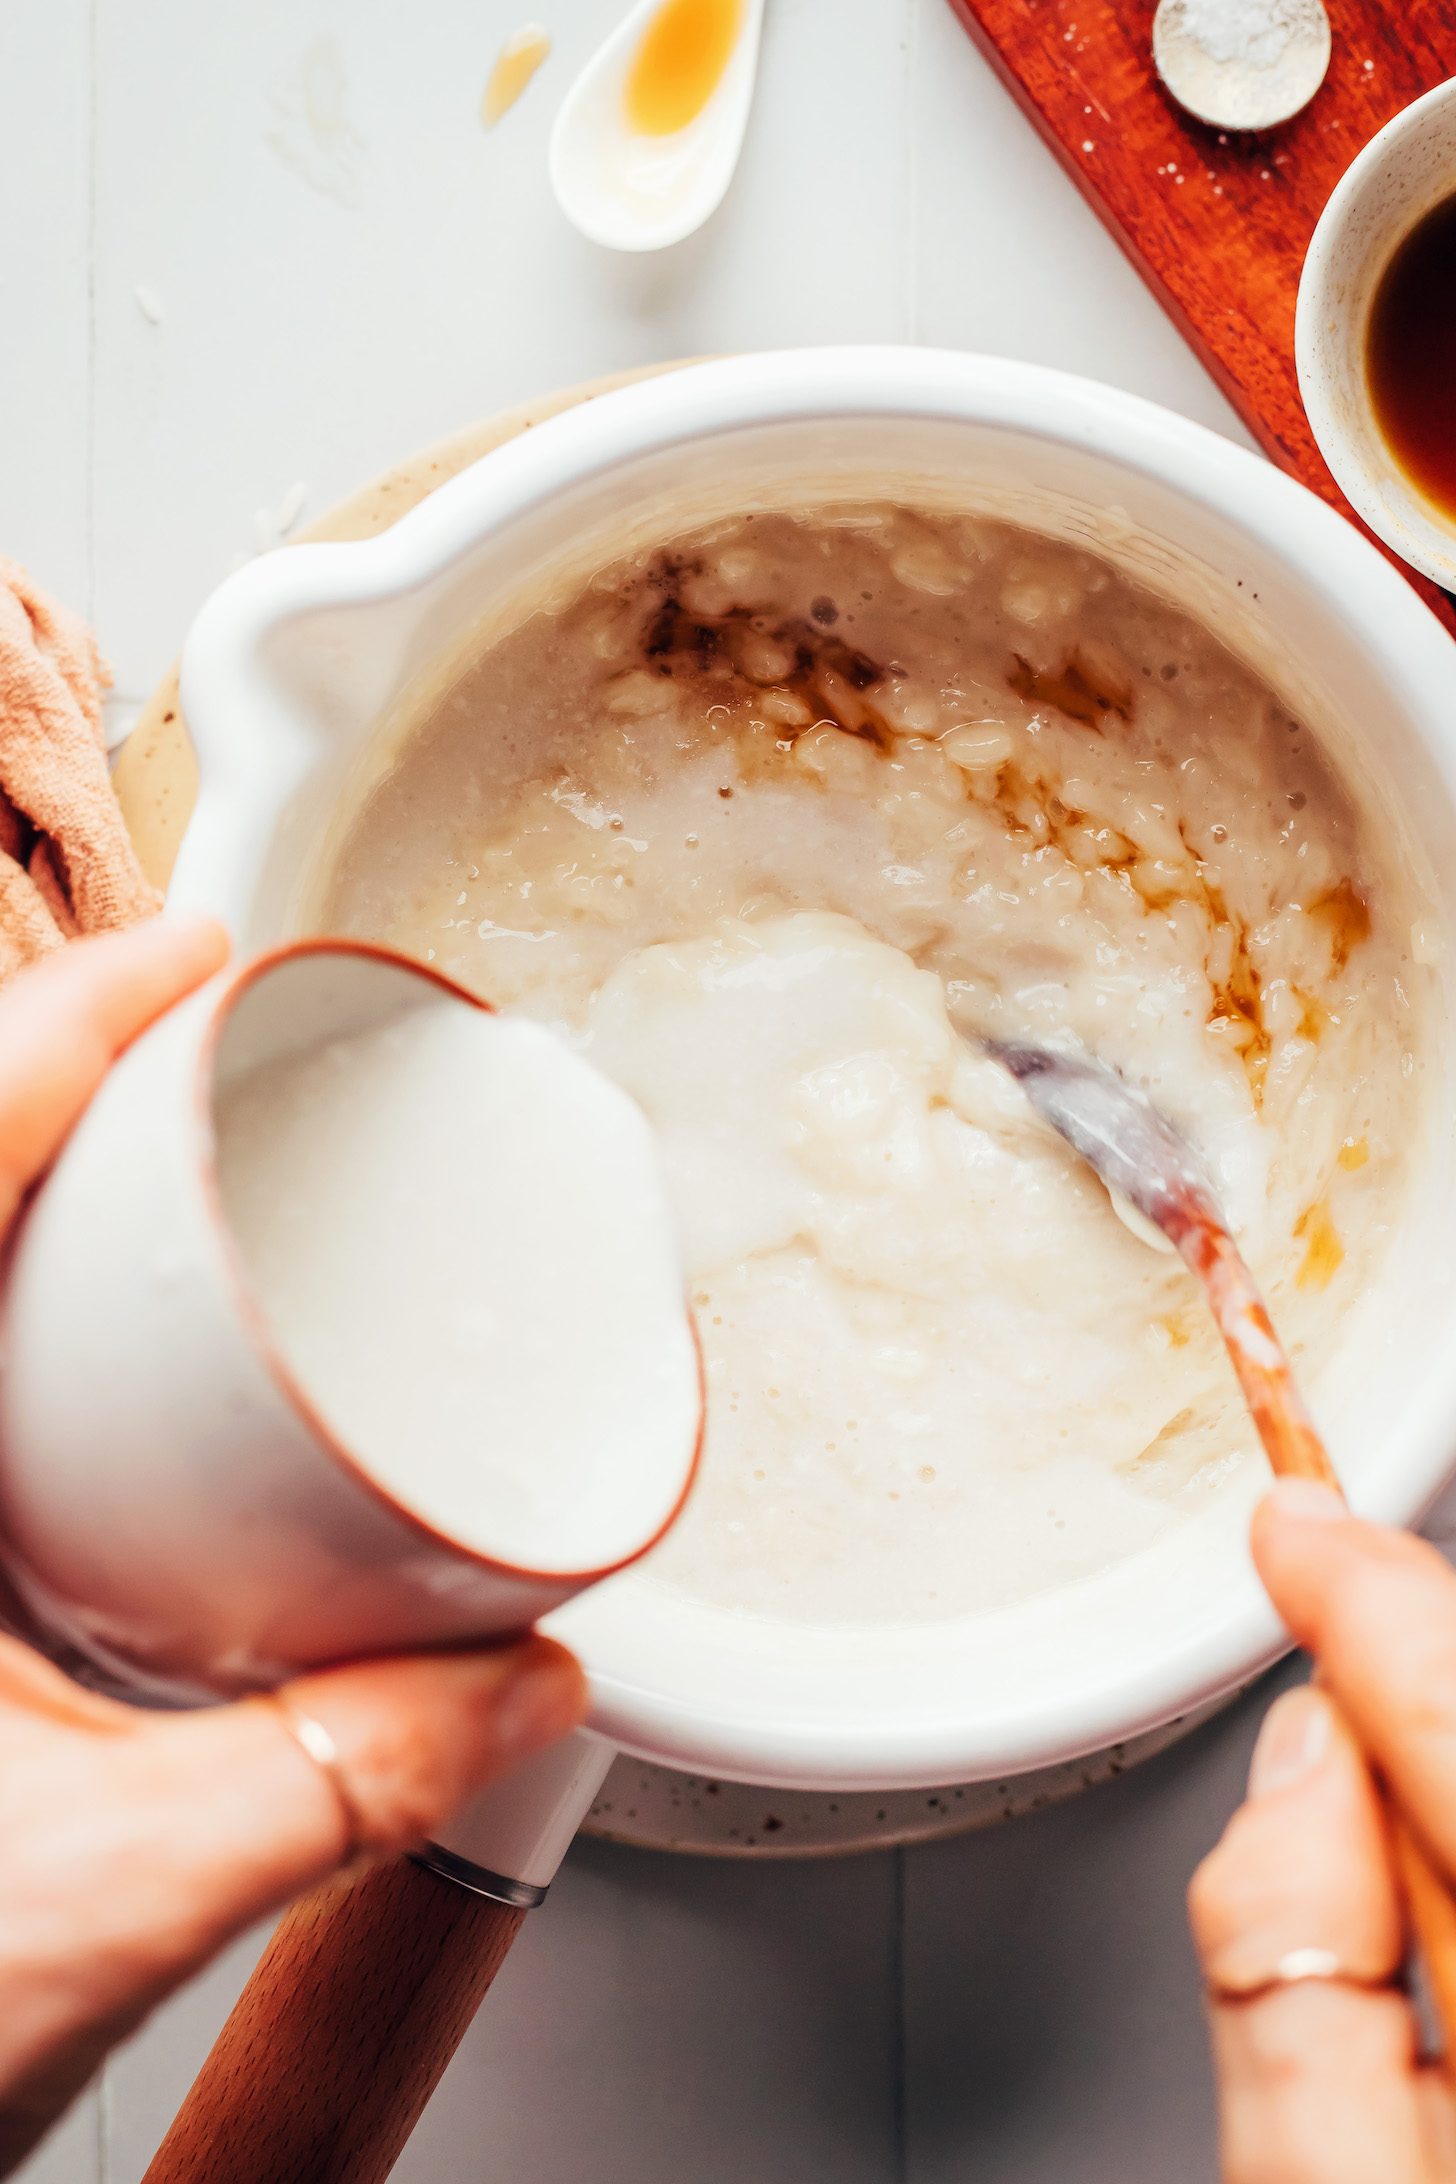 Verter leche de coco en una olla con jarabe de arce vainilla leche de almendras y arroz blanco cocido